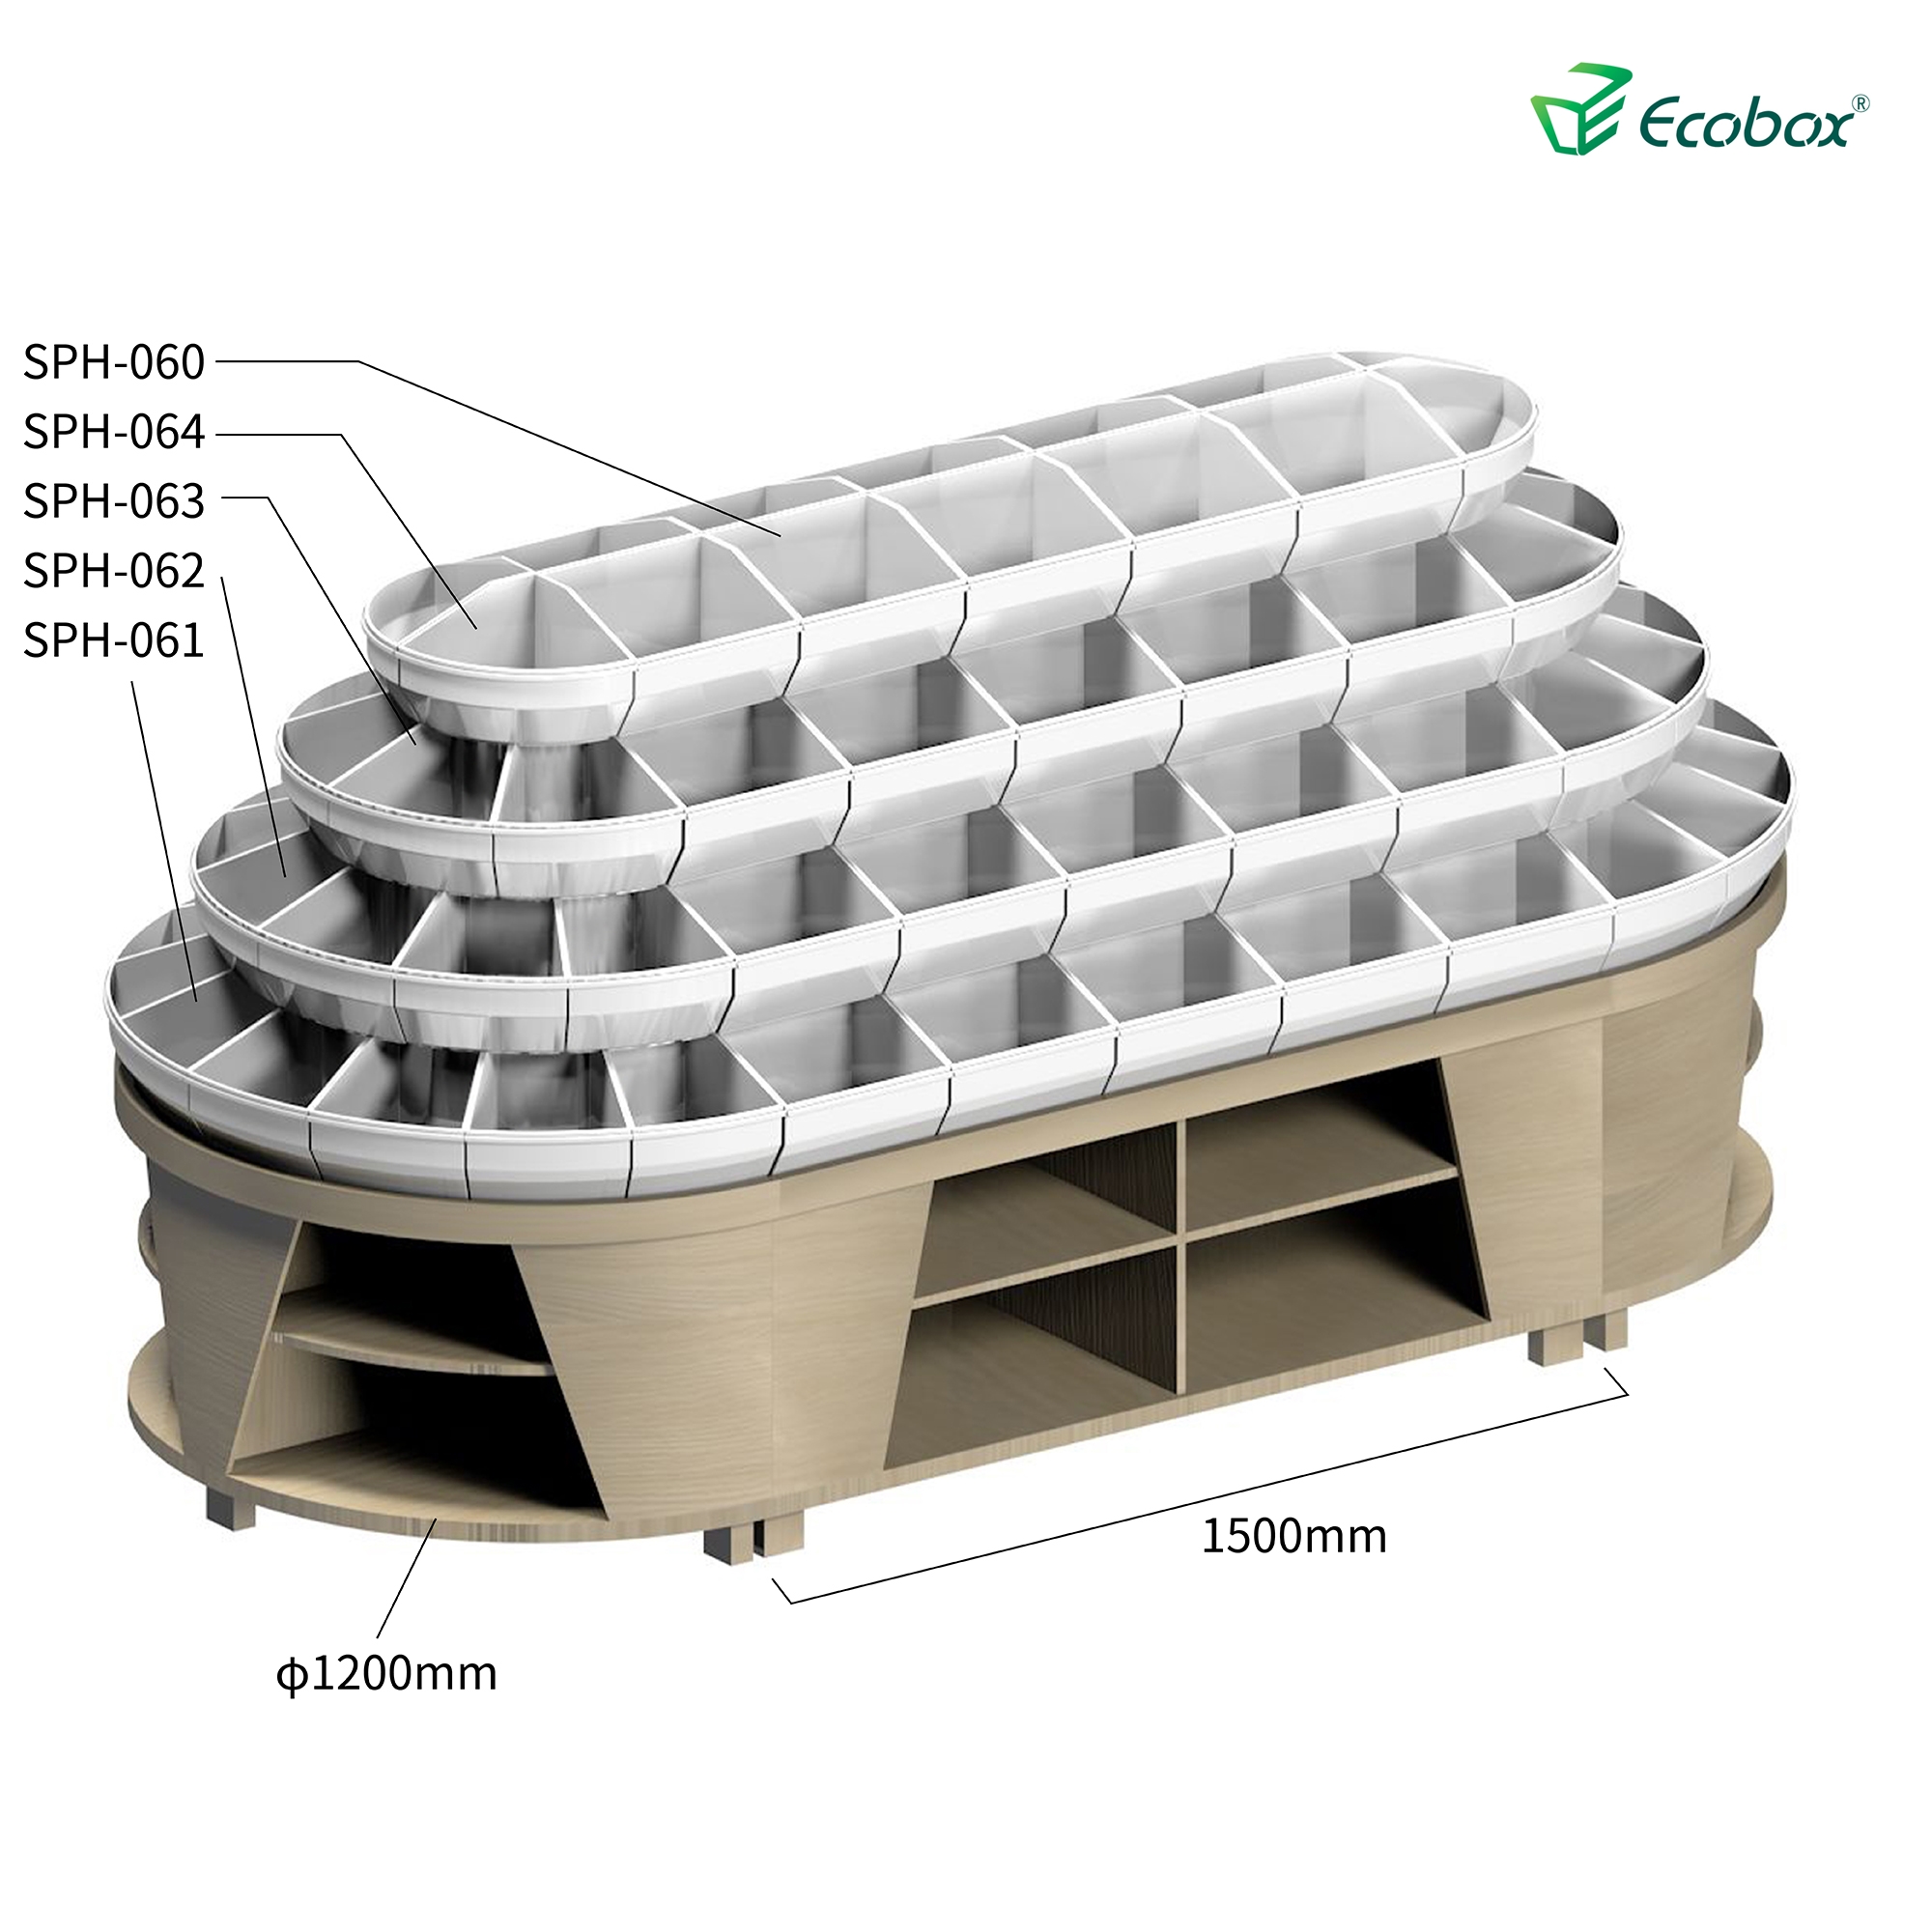 Ecobox G010 Supermarkt-Bulk-Food-Displays mit Ecobox-Supermarkt-Bins